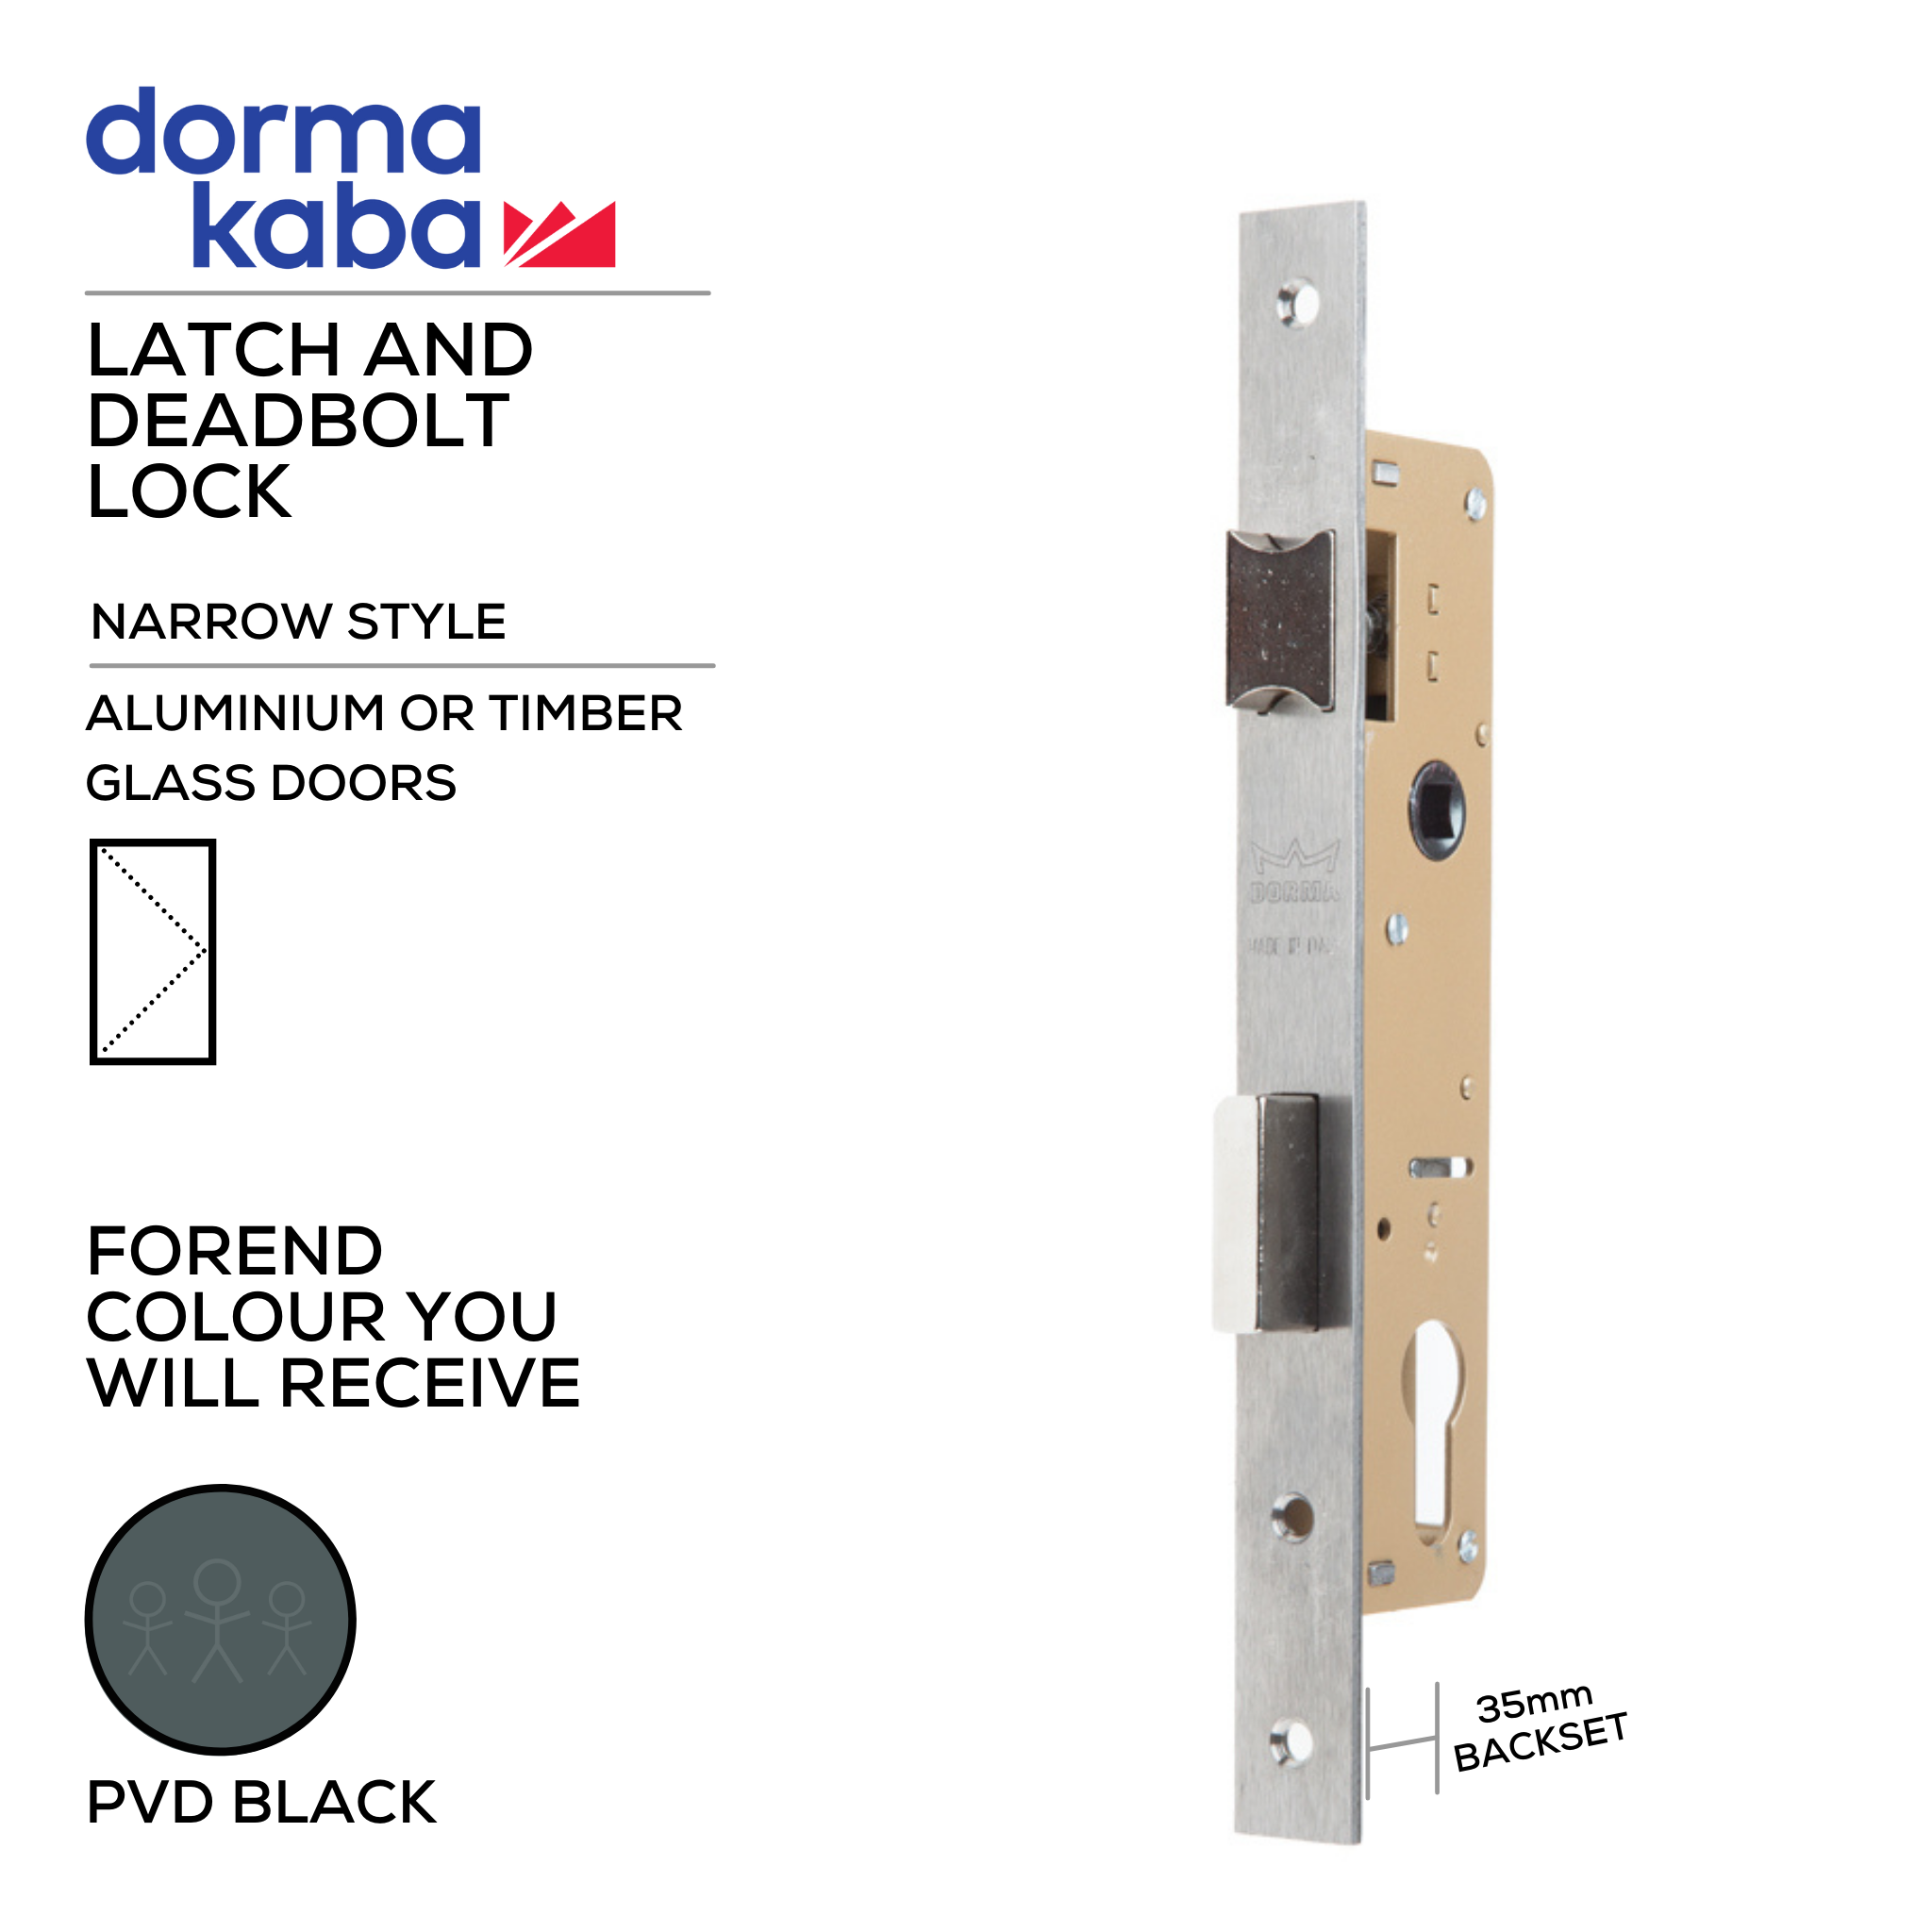 D02635 35mm - BLK, Narrow Style, Latch & Deadbolt Lock, Euro Cylinder, Excluding Cylinder, 35mm (Backset), PVD Black, DORMAKABA